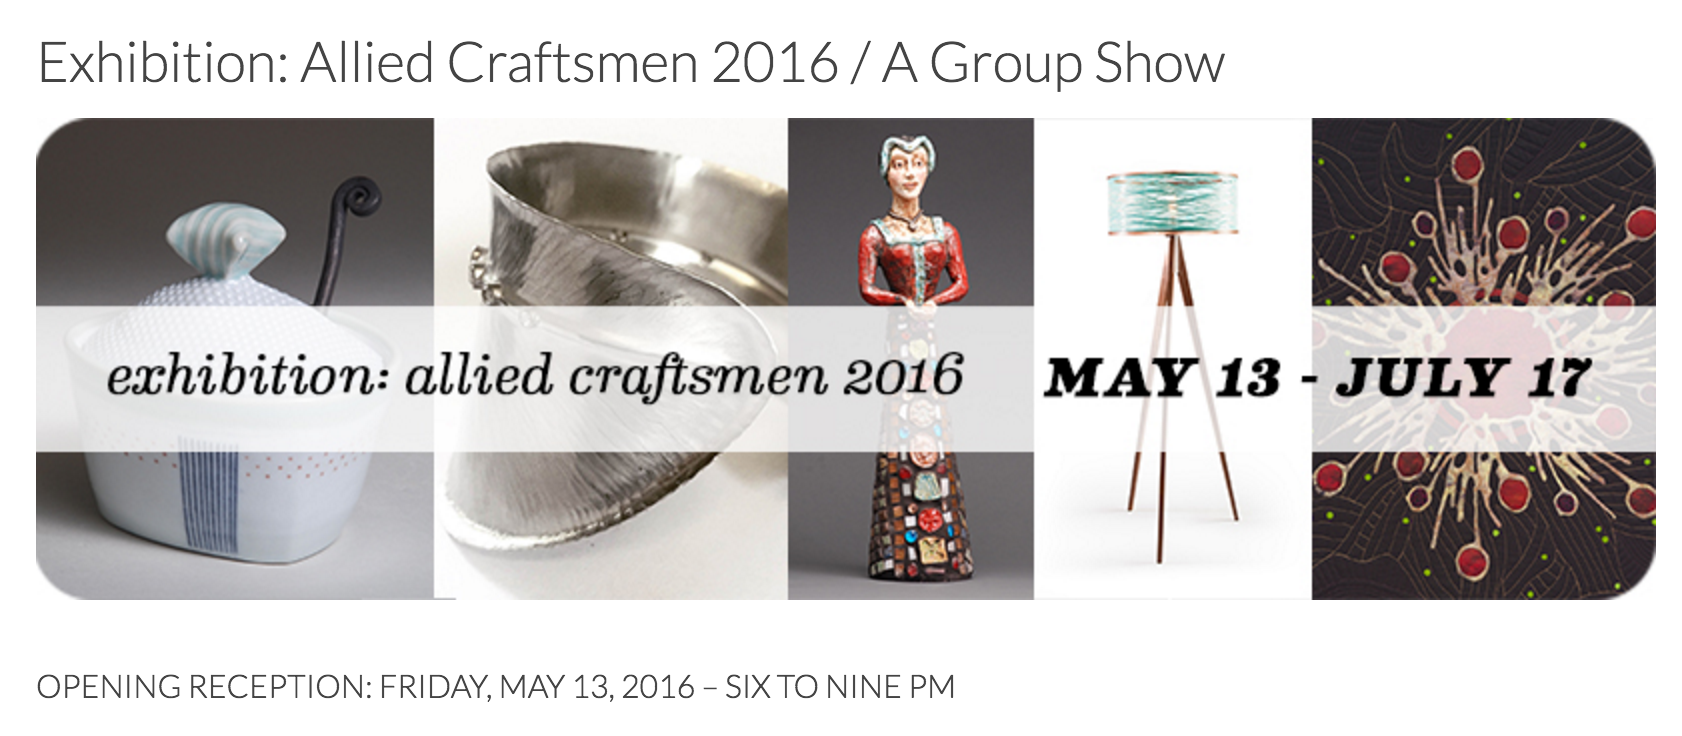 Allied Craftsmen Exhibition @ SPARKS Gallery